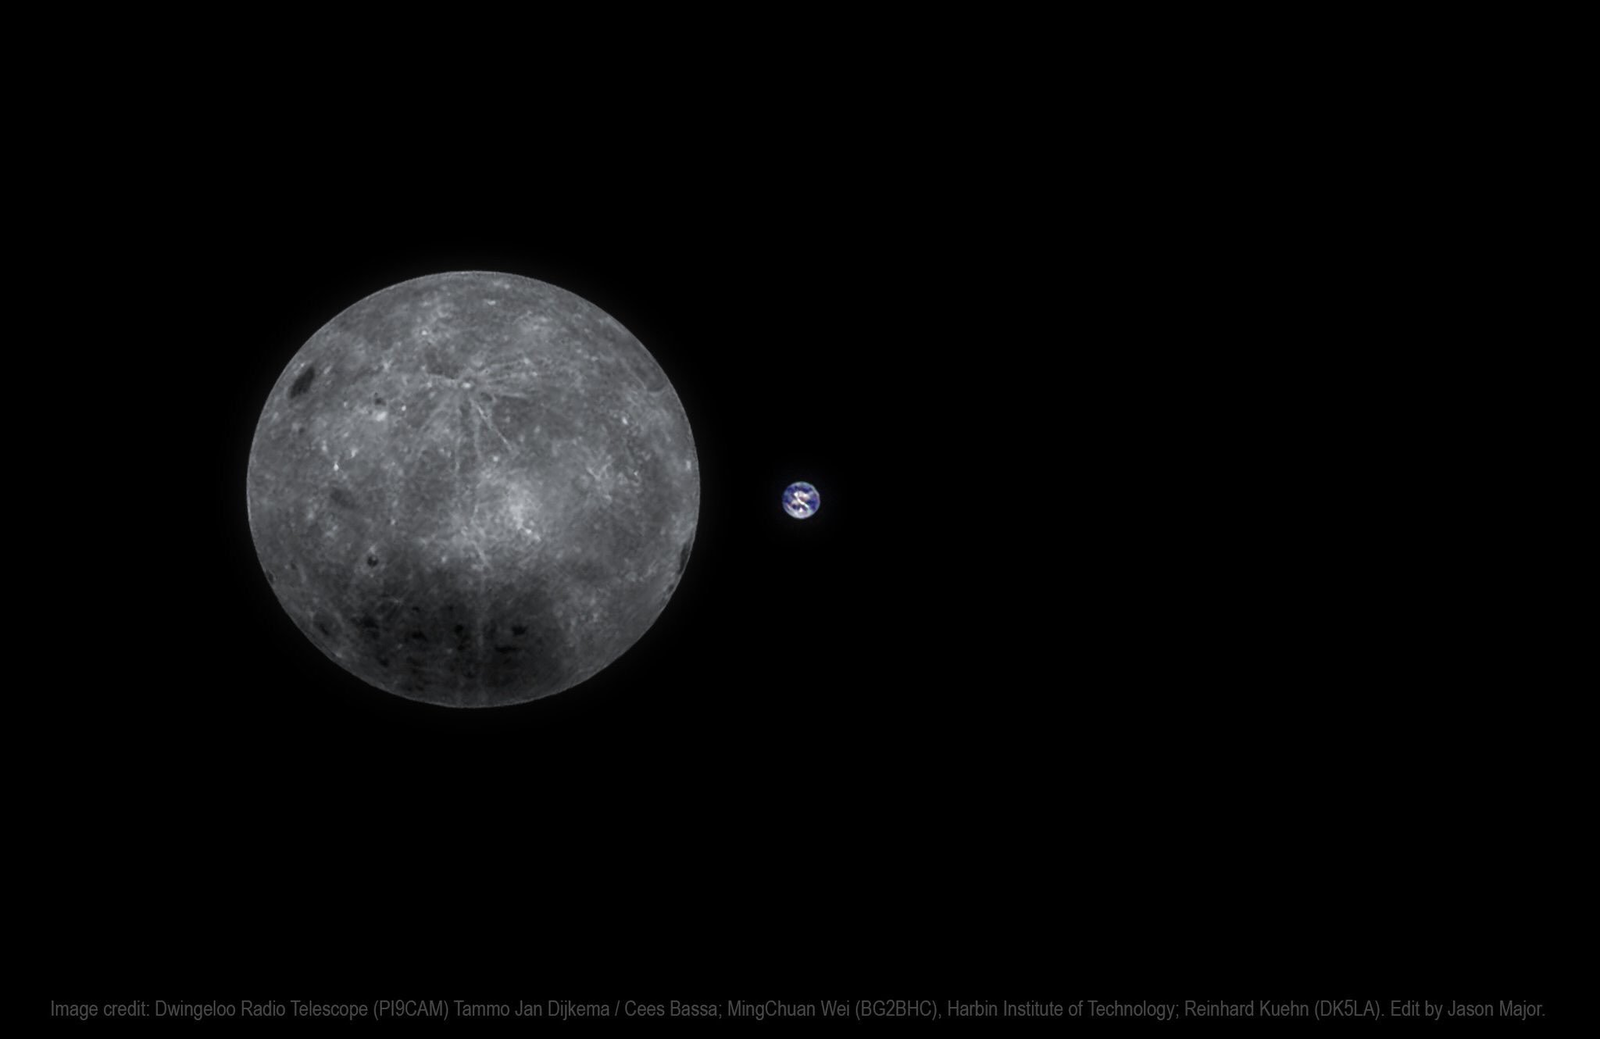 Китайский спутник прислал фото полной Земли с обратной стороны Луны